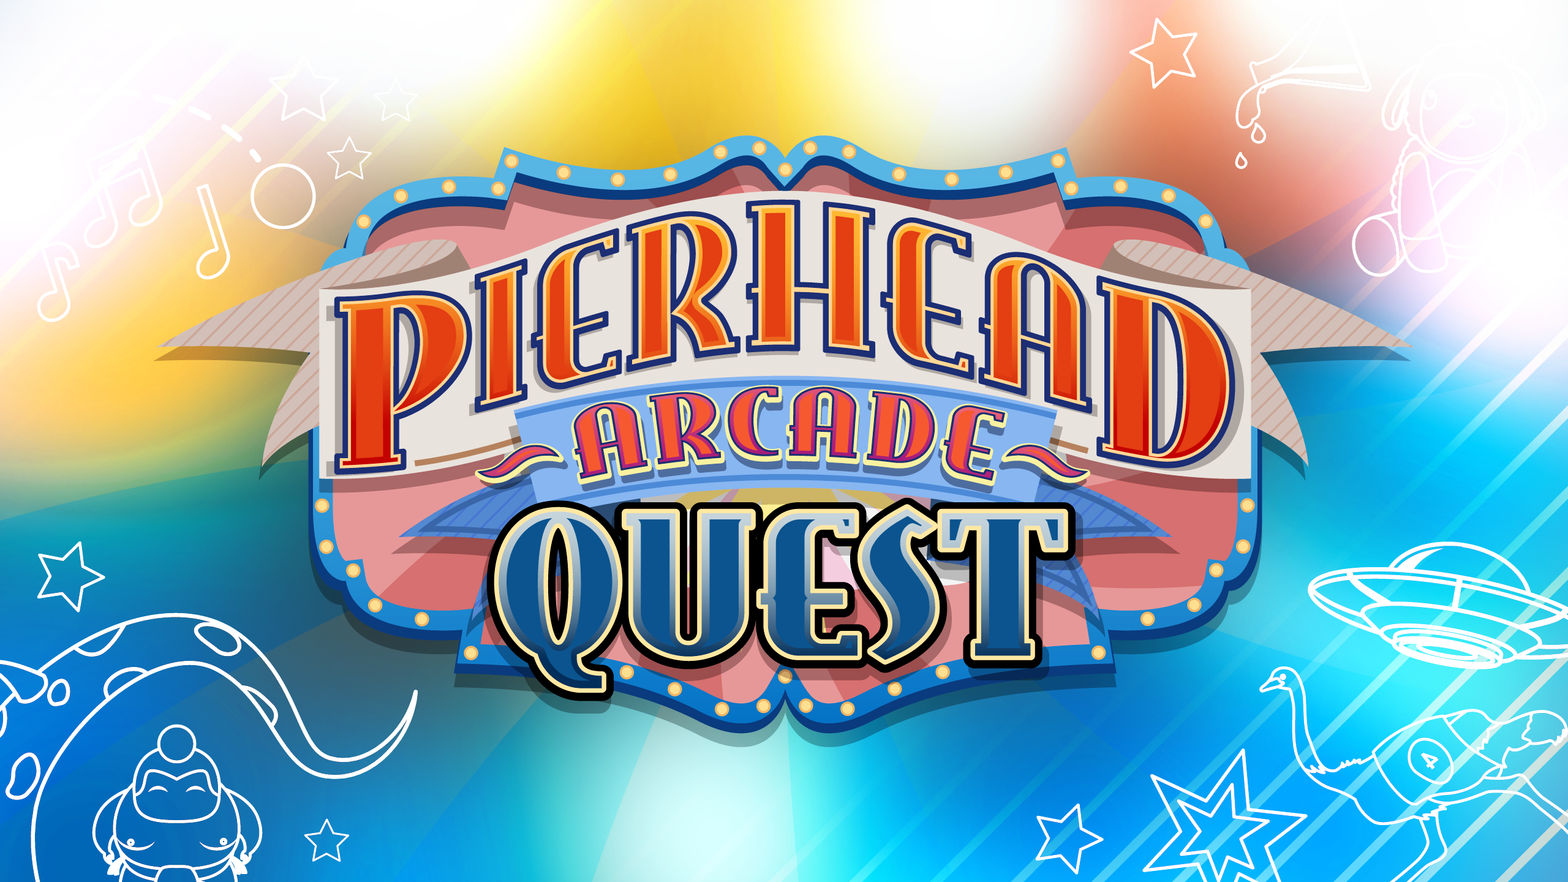 Pierhead Arcade Quest